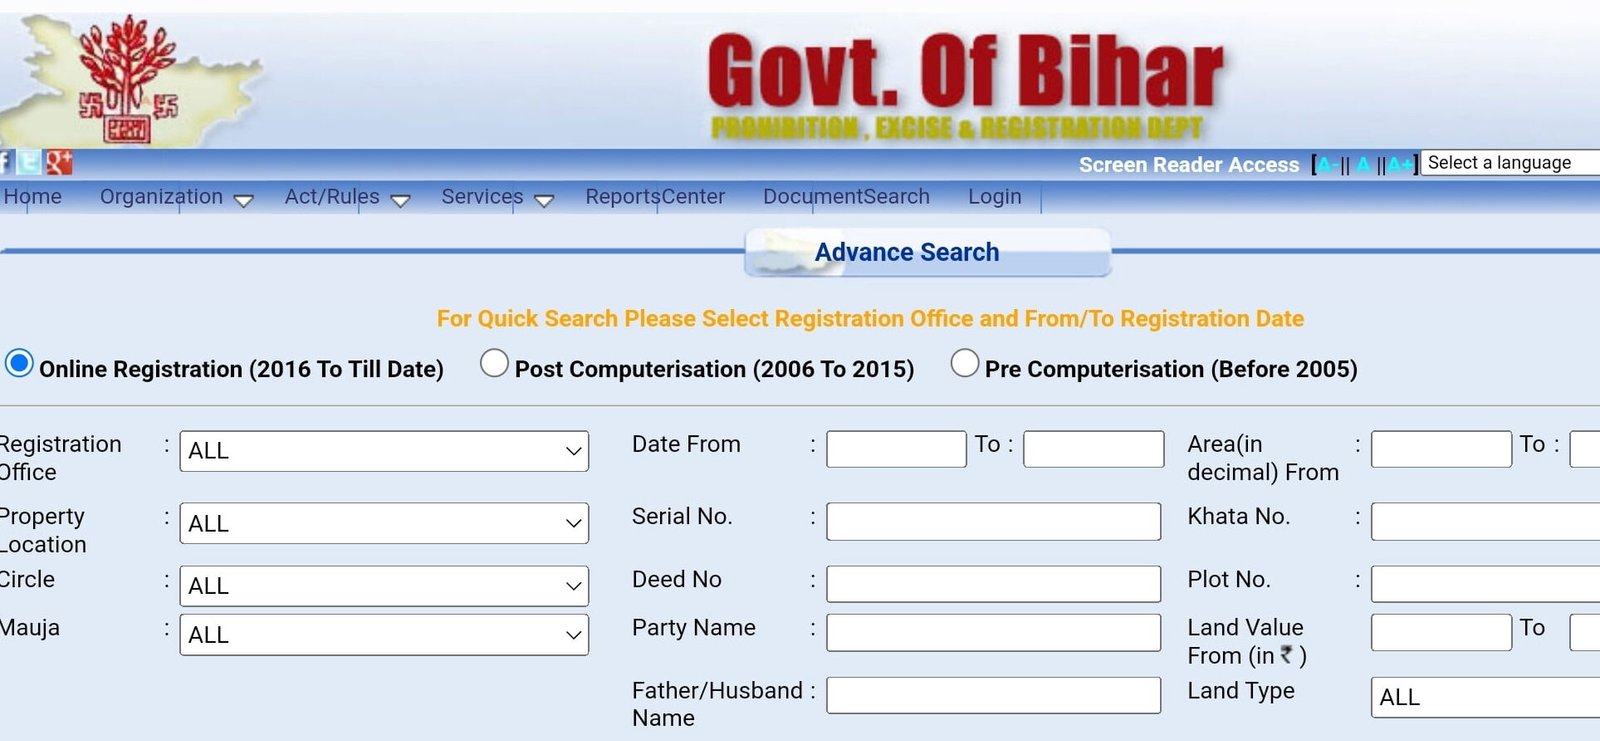 Bihar Jamin Ka Dastavej Online Kaise Nikale 2023